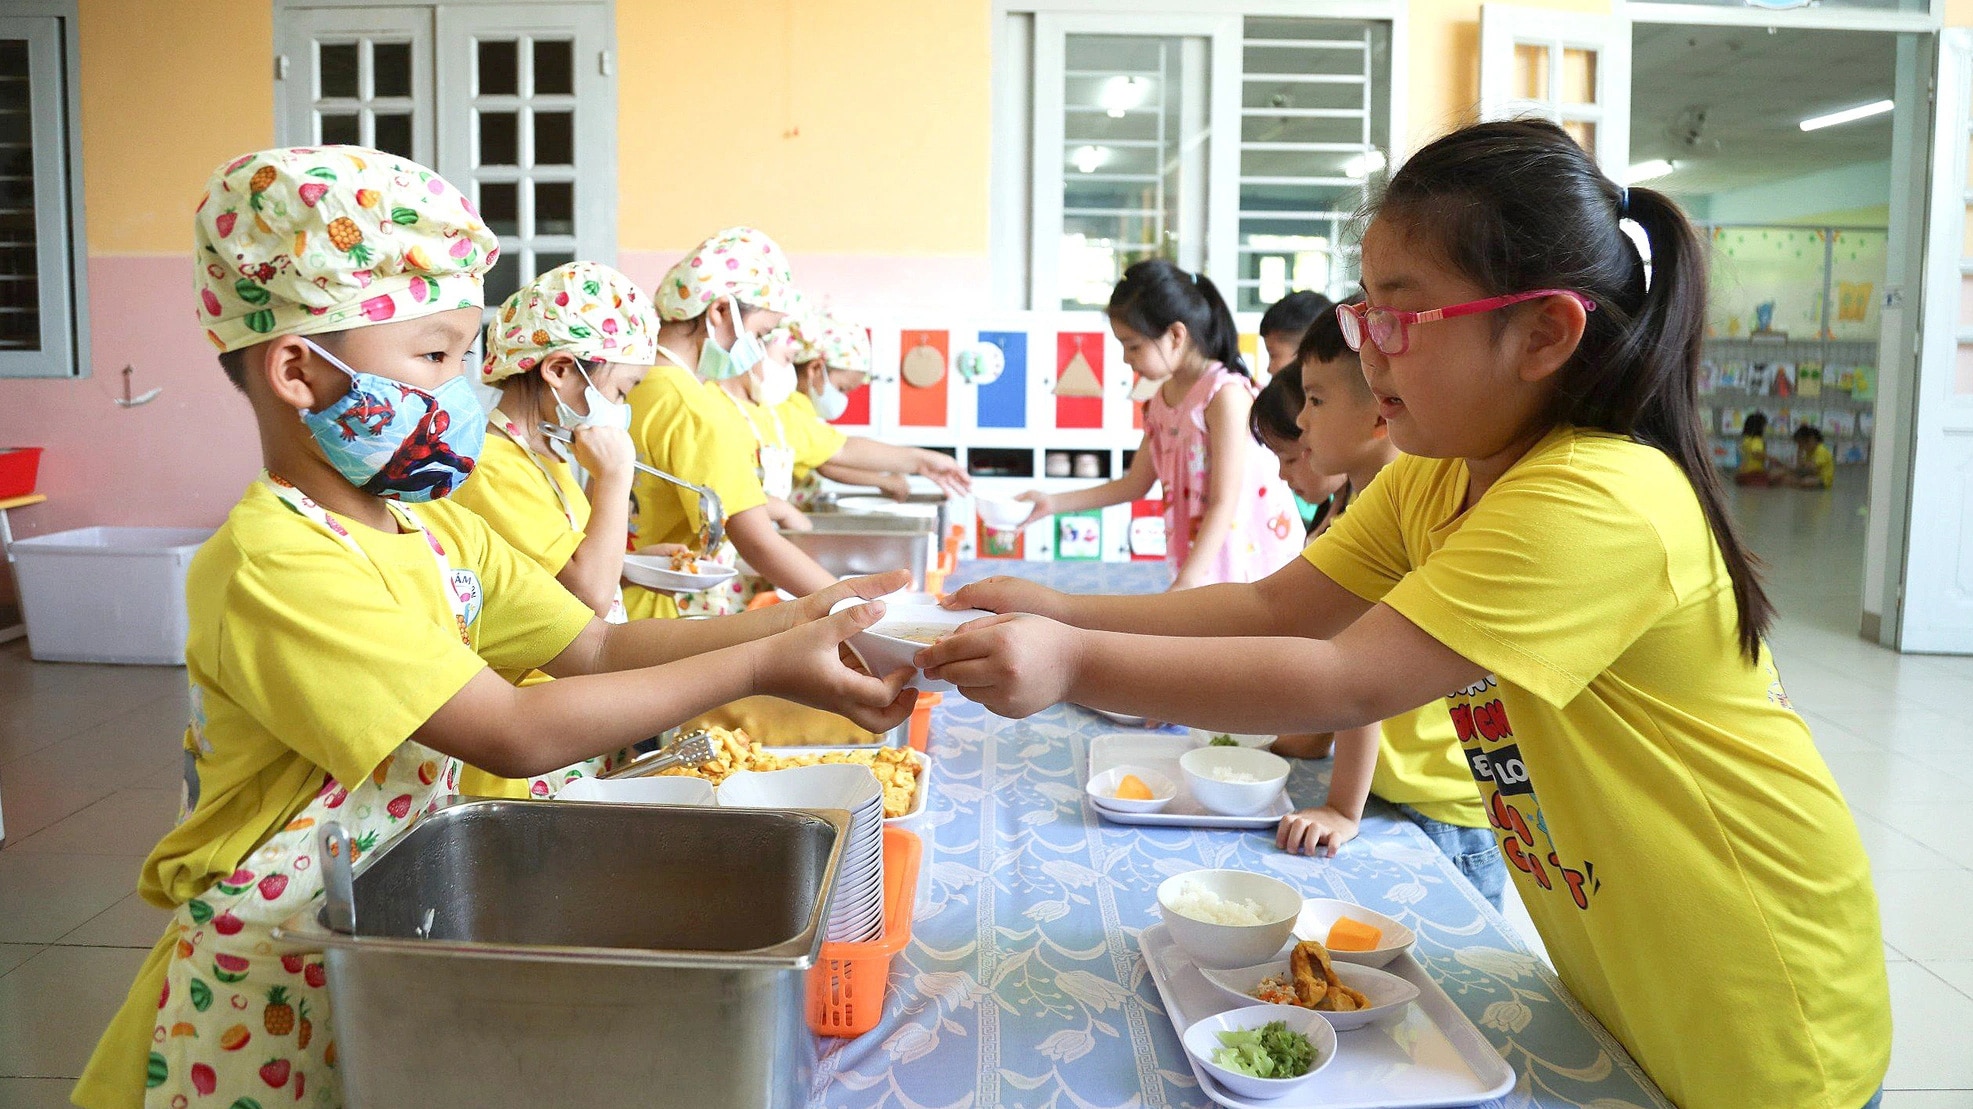 Schüler der 4. Klasse im Kindergarten Son Ca 3, Bezirk Hiep Binh Chanh, Stadt Thu Duc (HCMC) tragen Schürzen, schaufeln Reis und Suppe für ihre Freunde – Foto: PHUONG QUANYEN